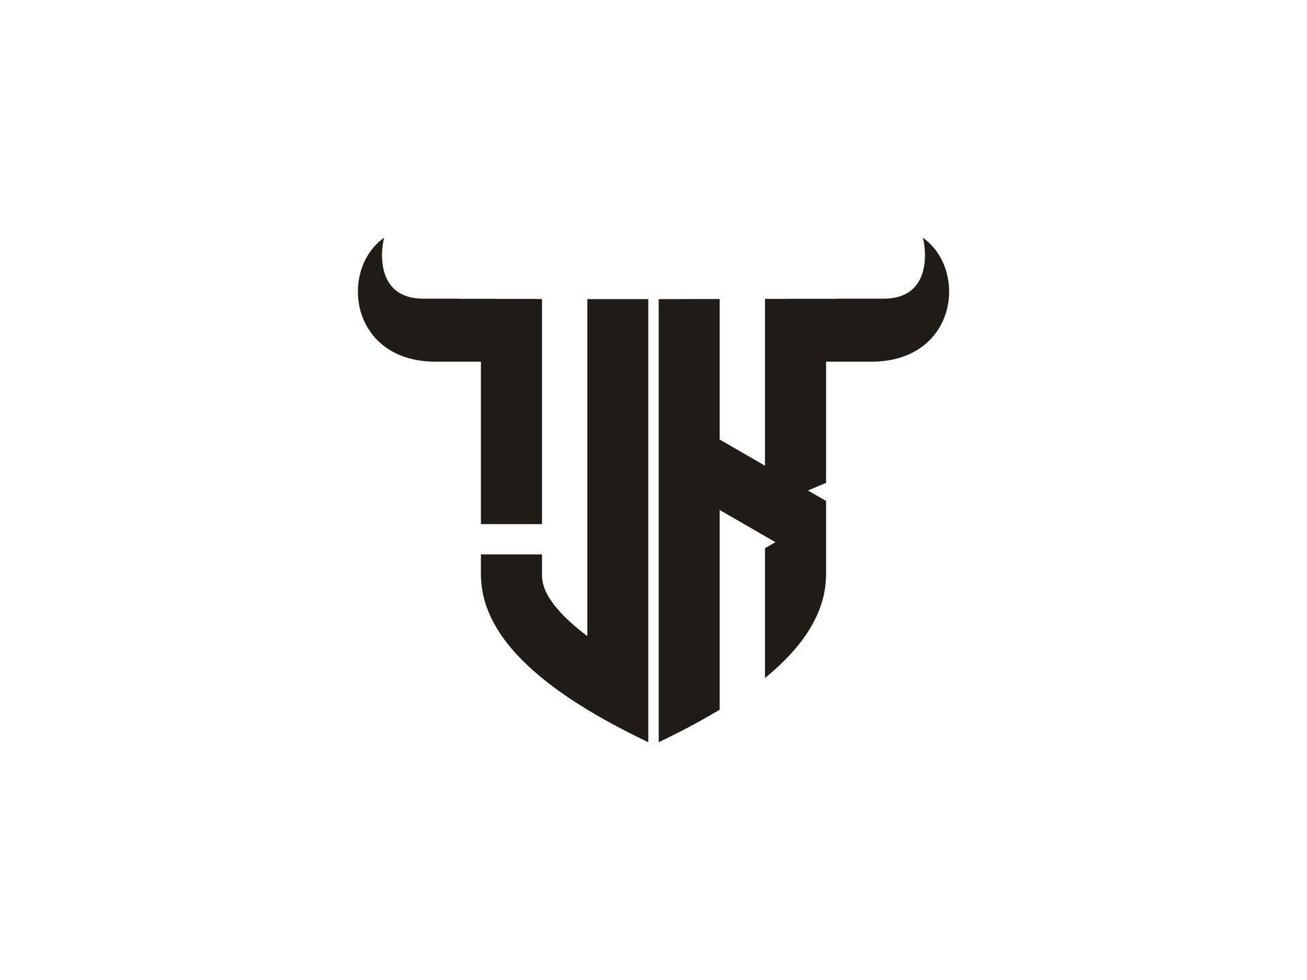 création initiale du logo jk bull. vecteur